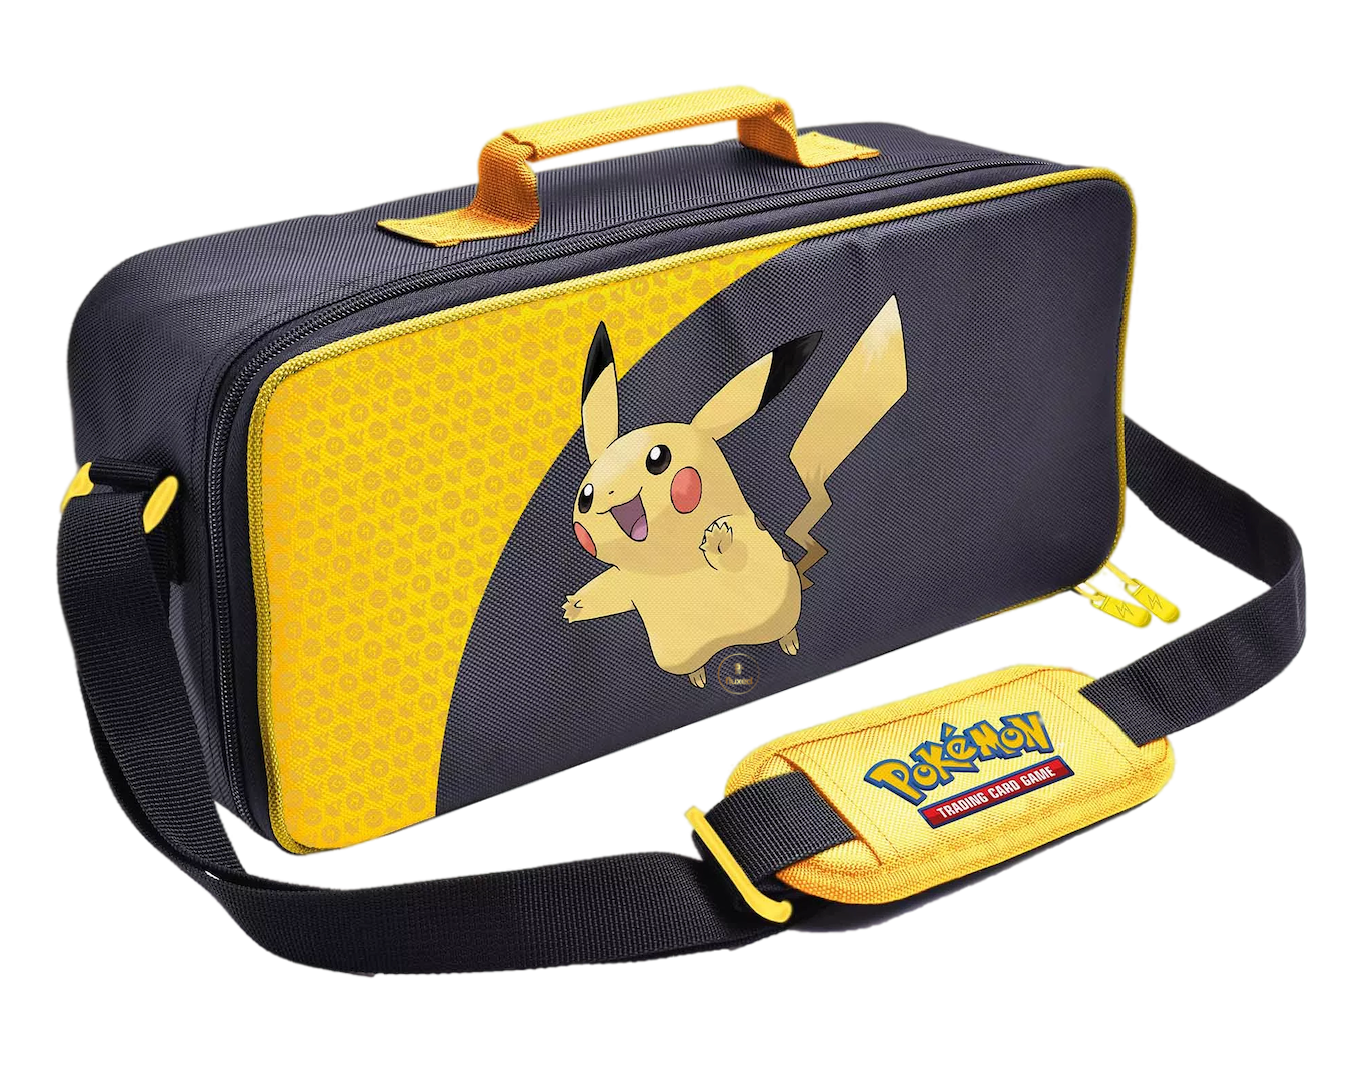 Pokémon - Pikachu Deluxe Tasche - Nur CHF 64.90! Jetzt kaufen auf fluxed.ch